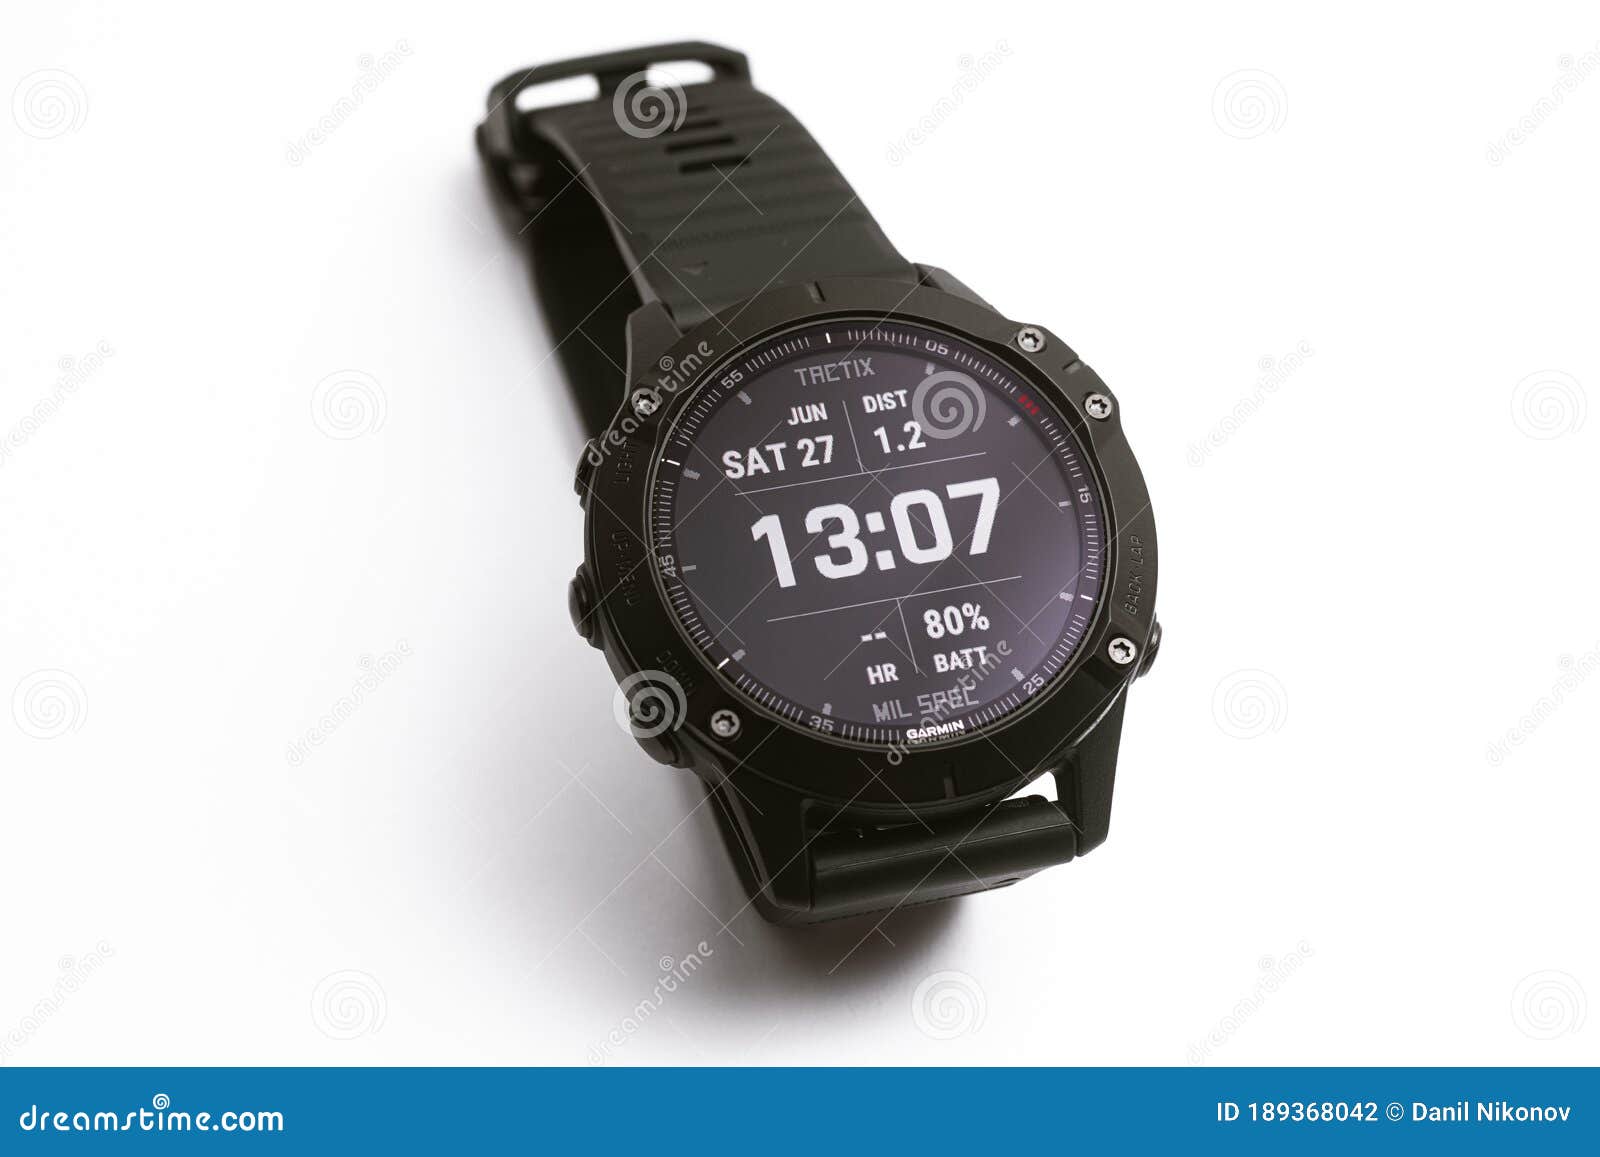 Smart Watch Garmin Fenix 6 Pro đen trên nền trắng mang đến một phong cách thể thao, nam tính và đầy độc đáo cho những người đàn ông yêu thích màu sắc đơn giản và trang nhã. Sản phẩm này được trình diễn trong một bức ảnh thật đẹp mắt, khiến cho bạn không thể bỏ qua.